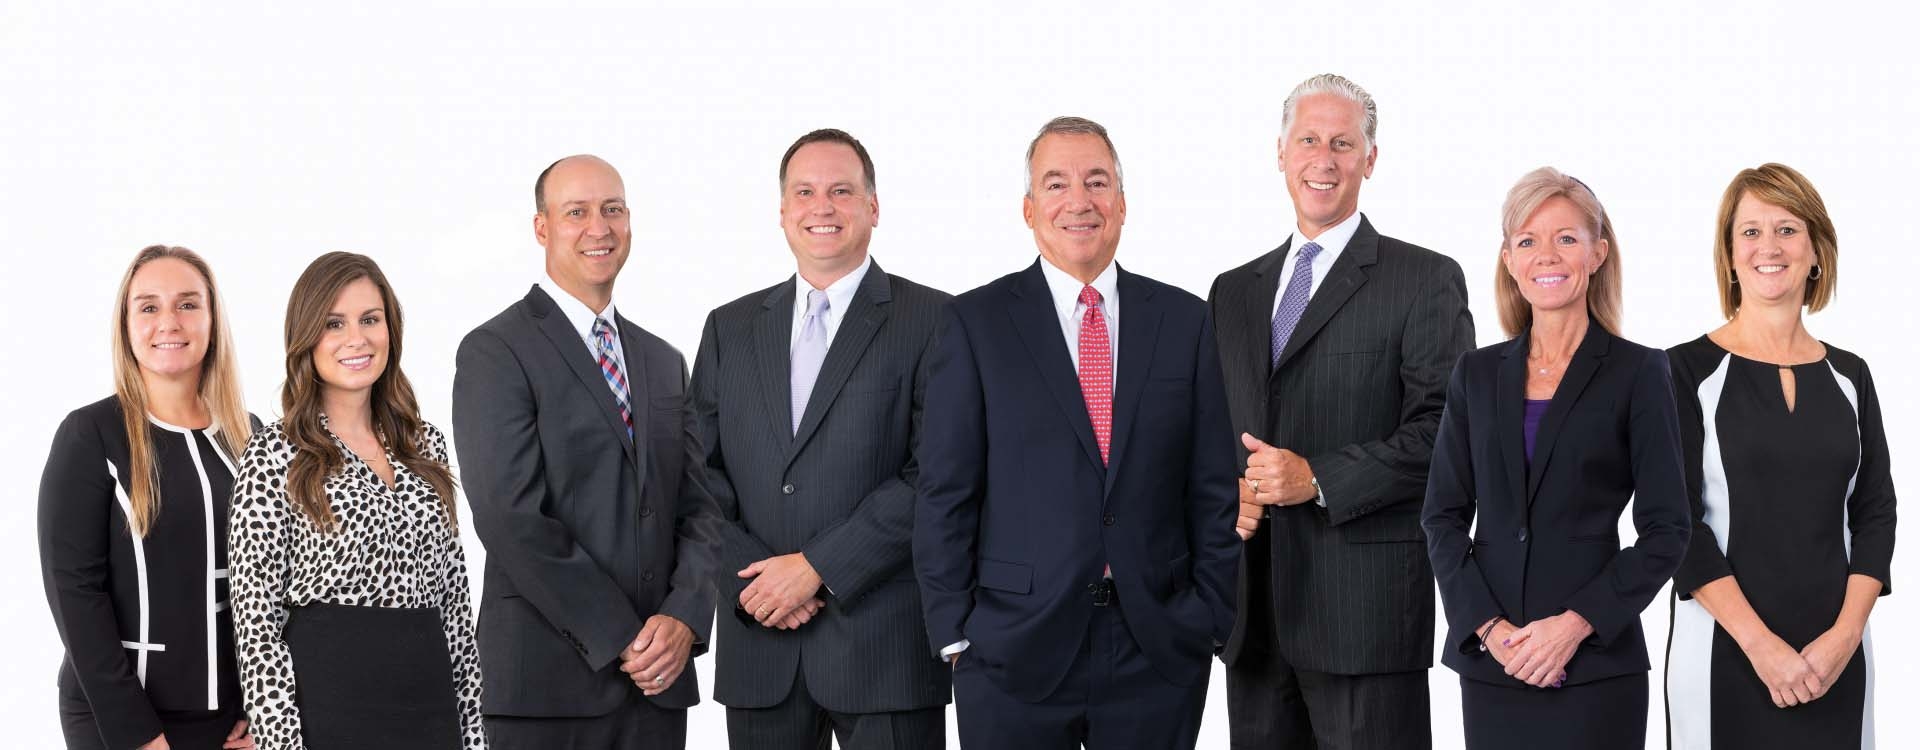 Cincinnati Corporate team group photo